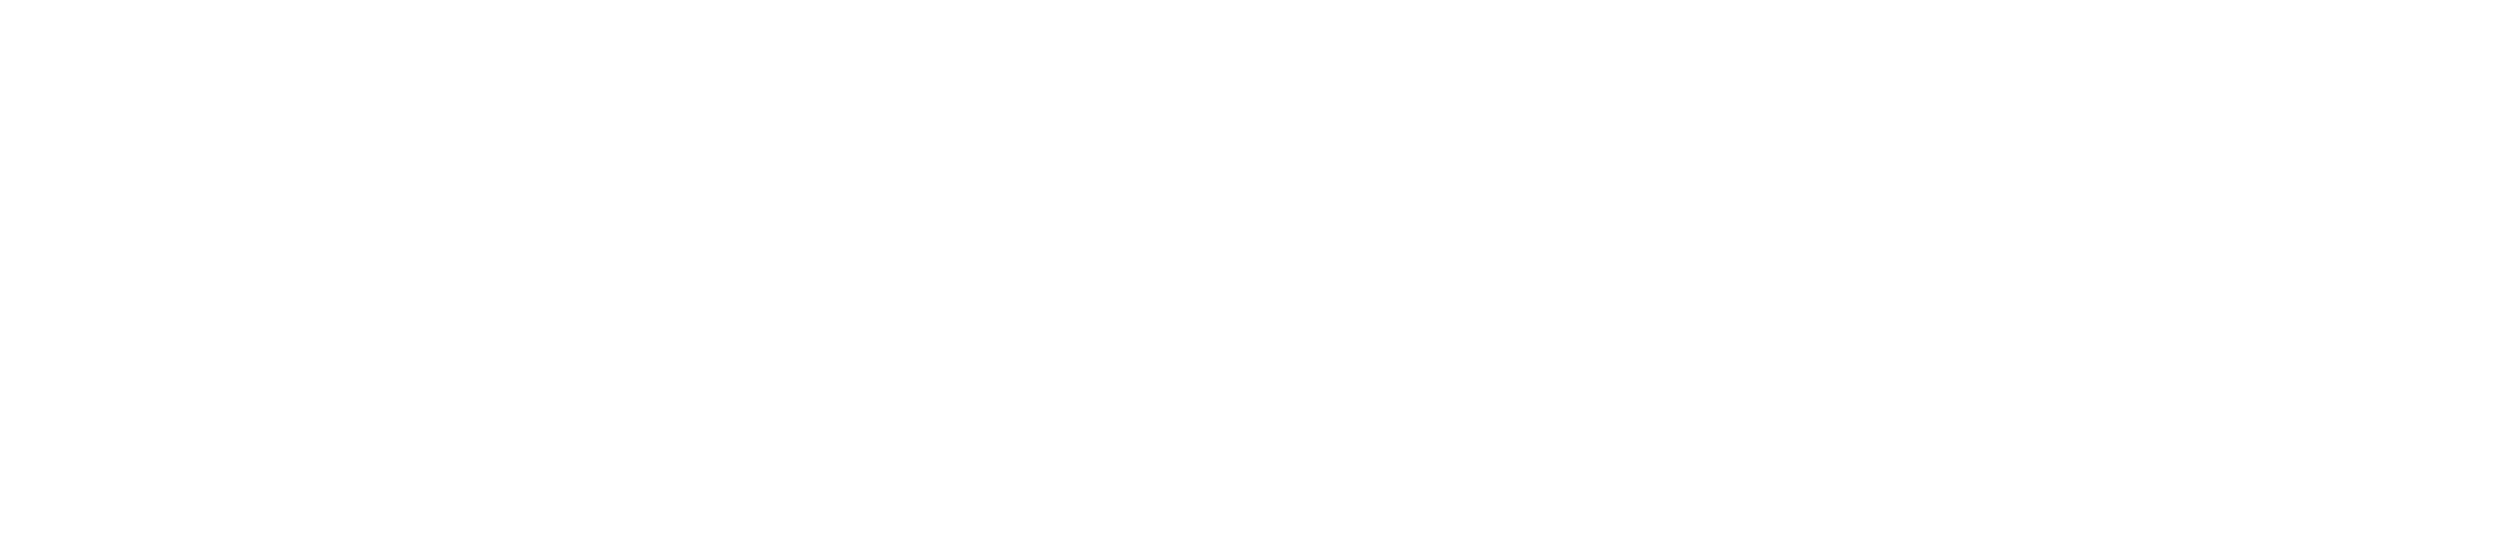 logo innova mobile